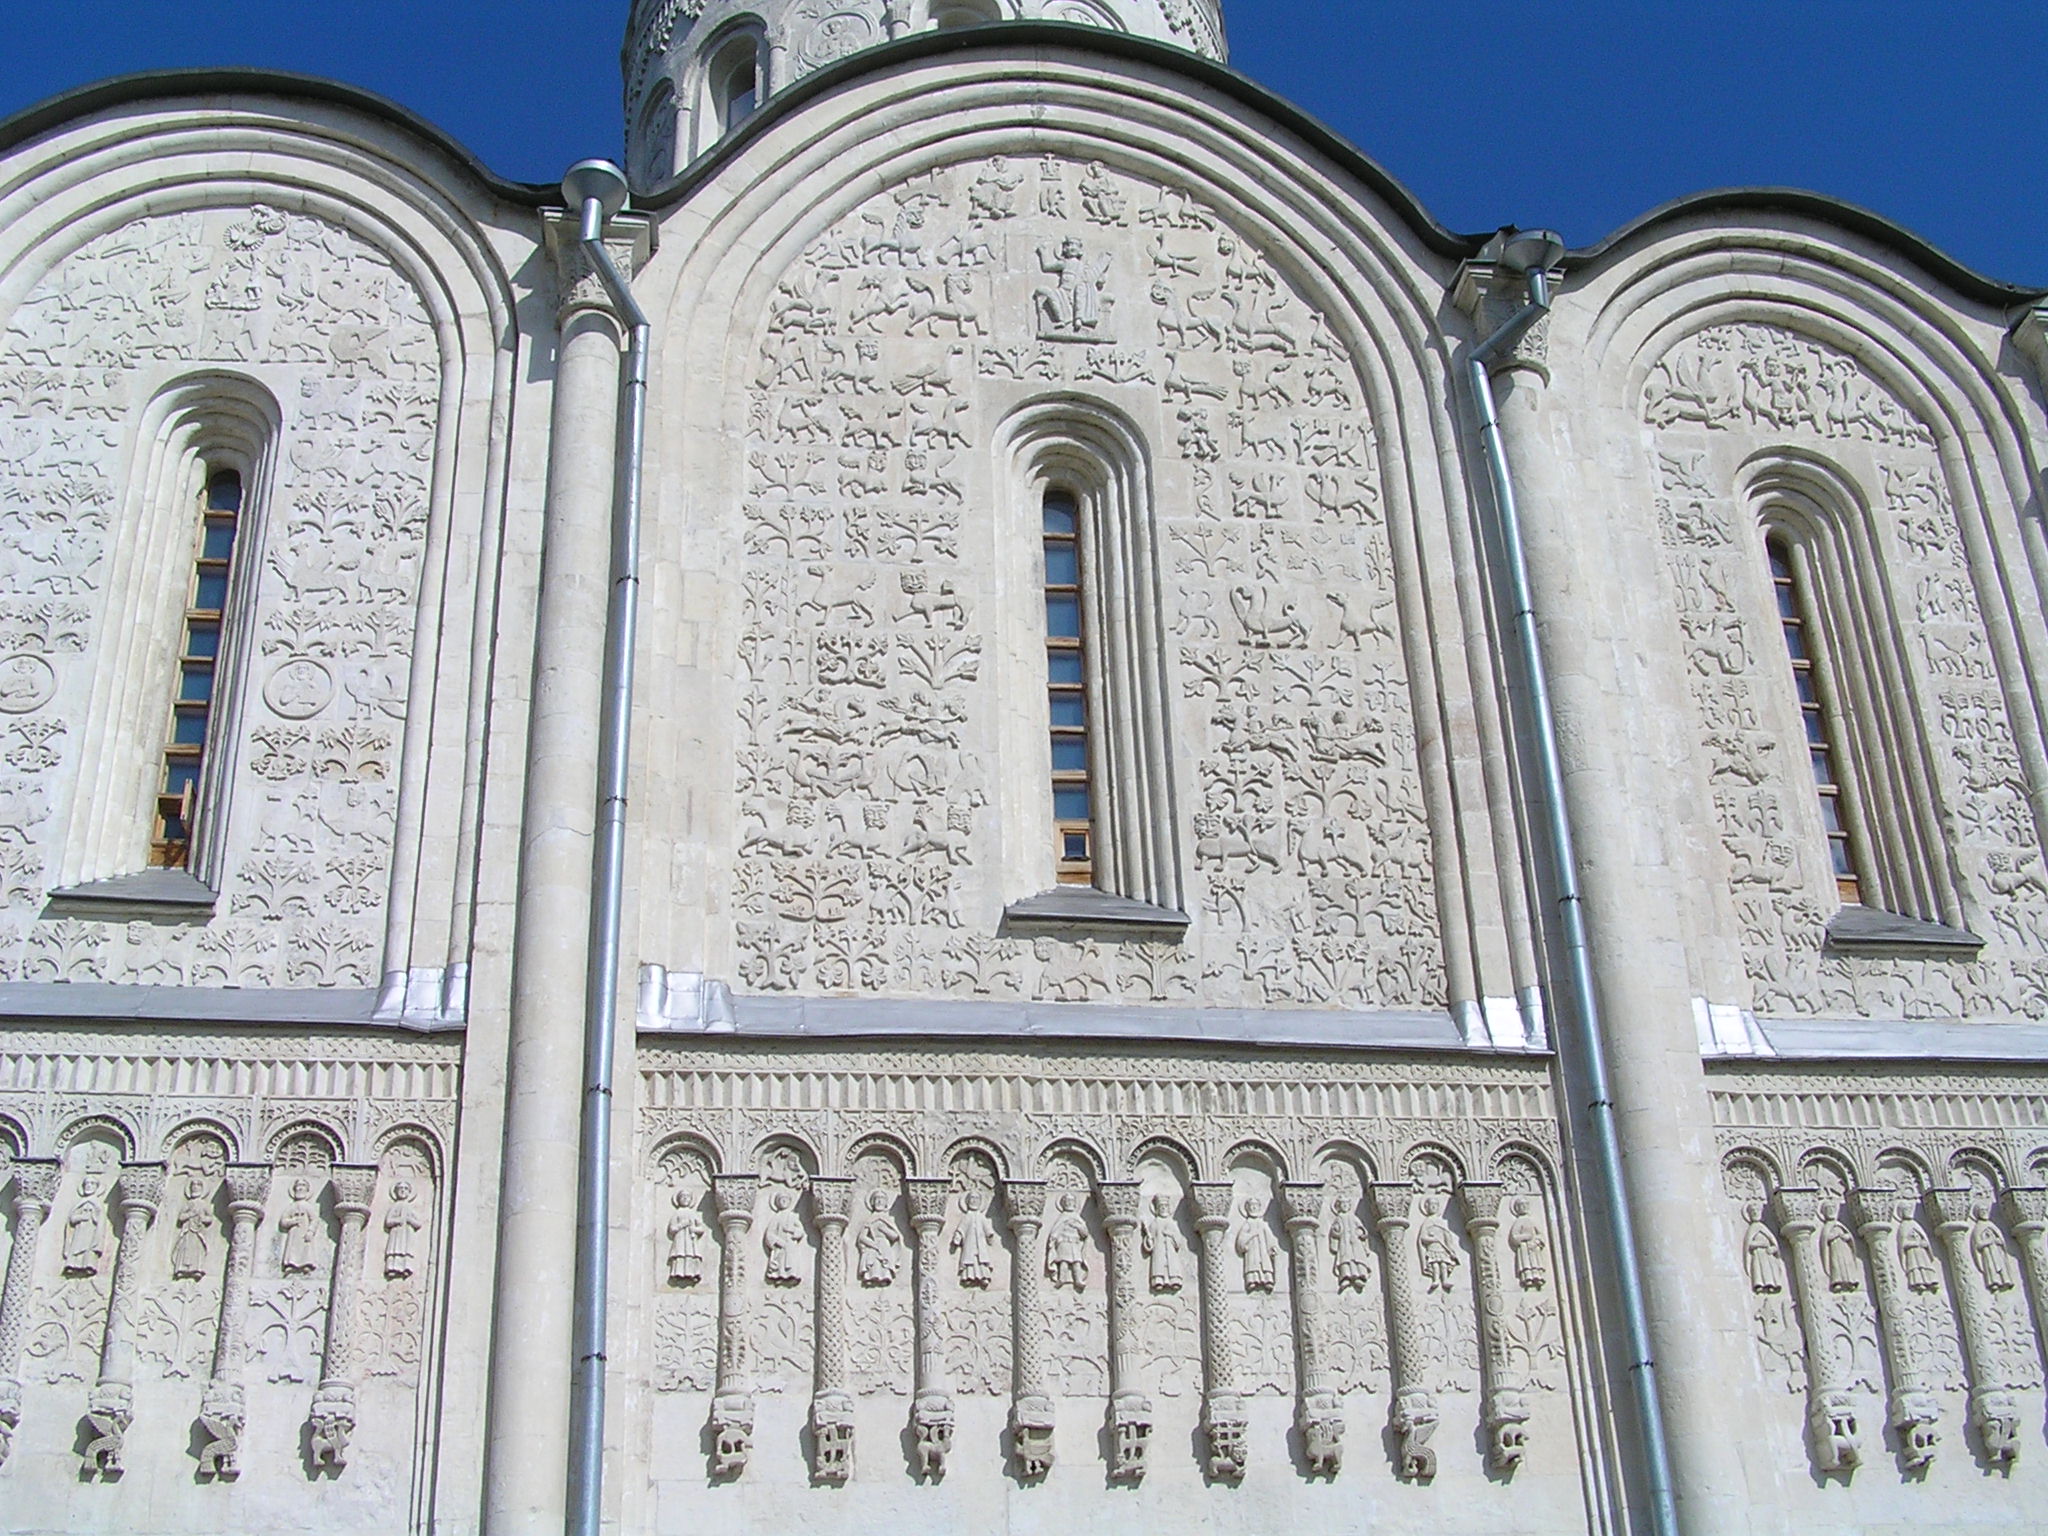 дмитриевский собор внутри